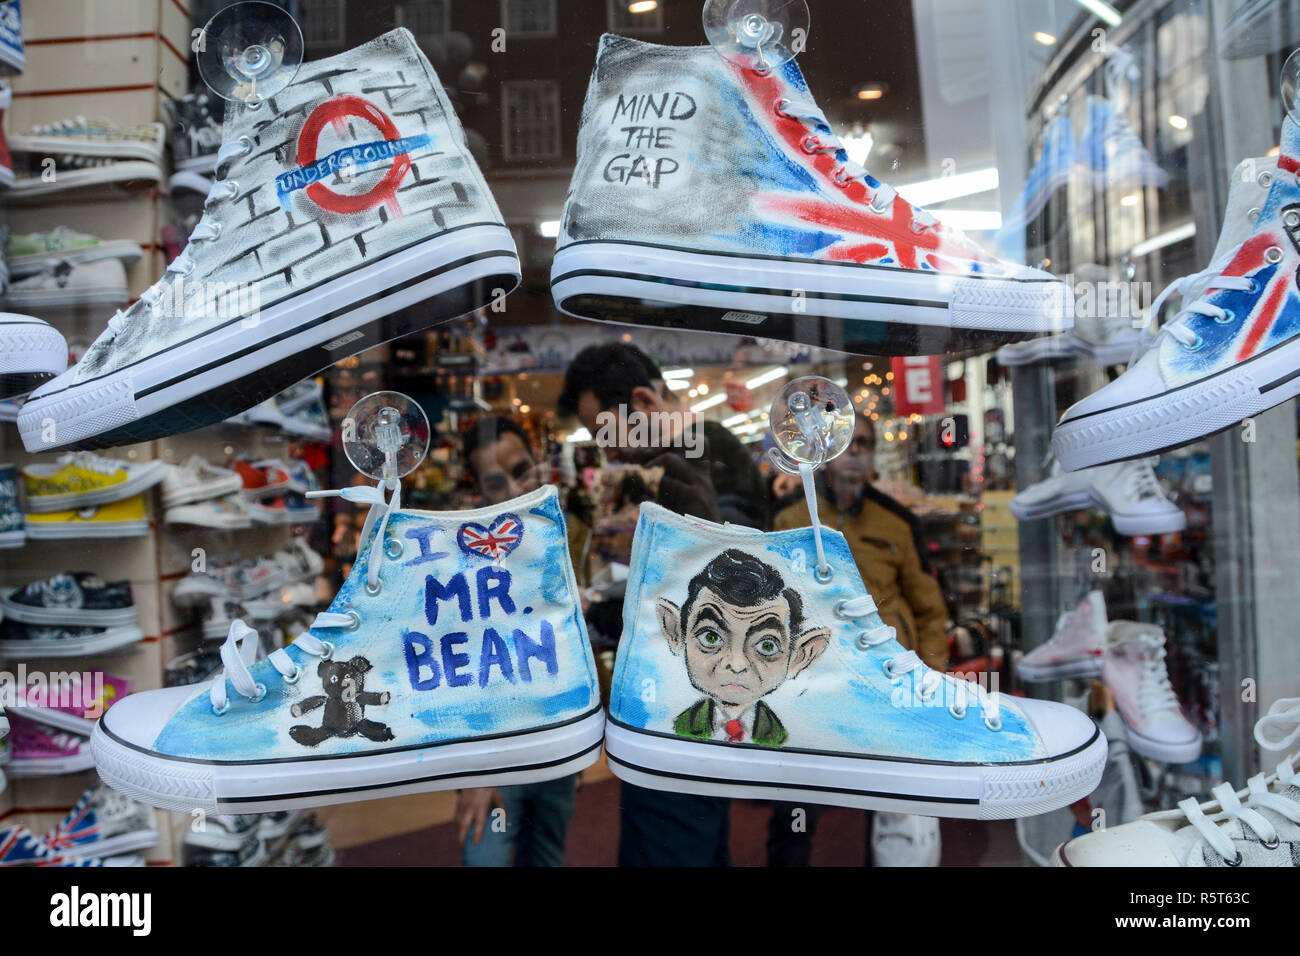 Chaussures converse de Mr Bean dans un magasin de chaussures, Oxford Street, London, UK Banque D'Images